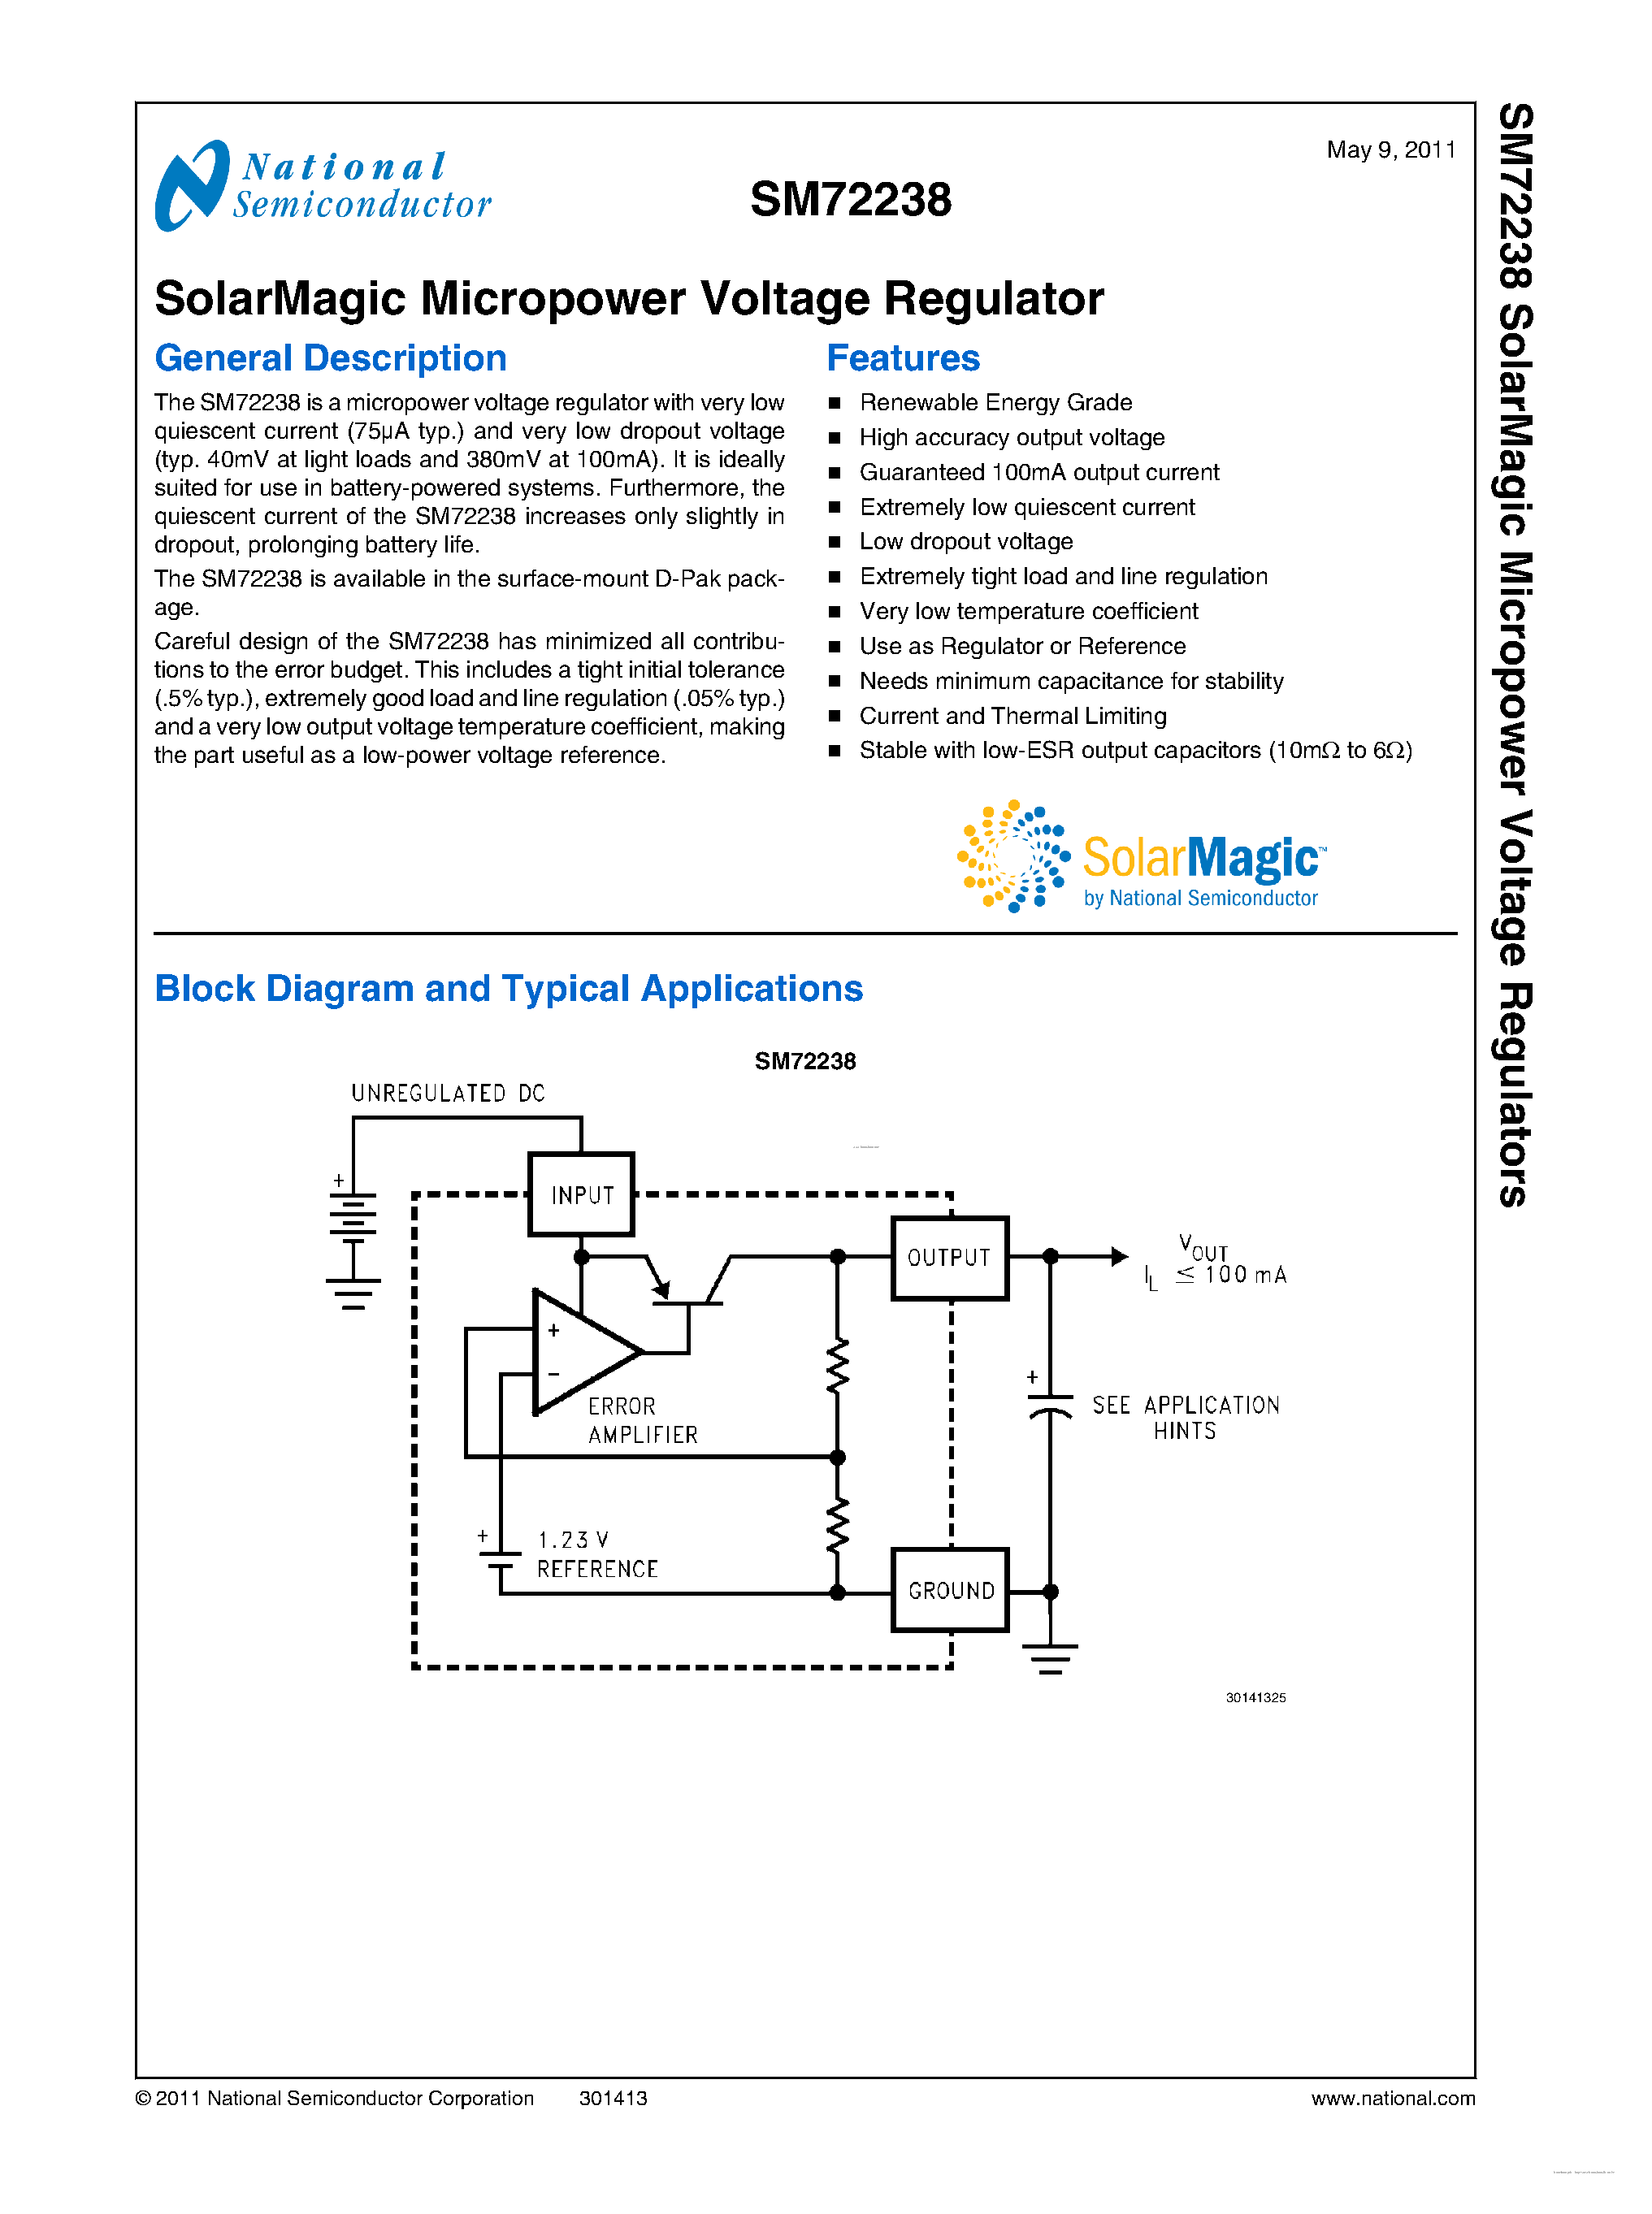 Даташит SM72238 - SolarMagic Micropower Voltage Regulator страница 1